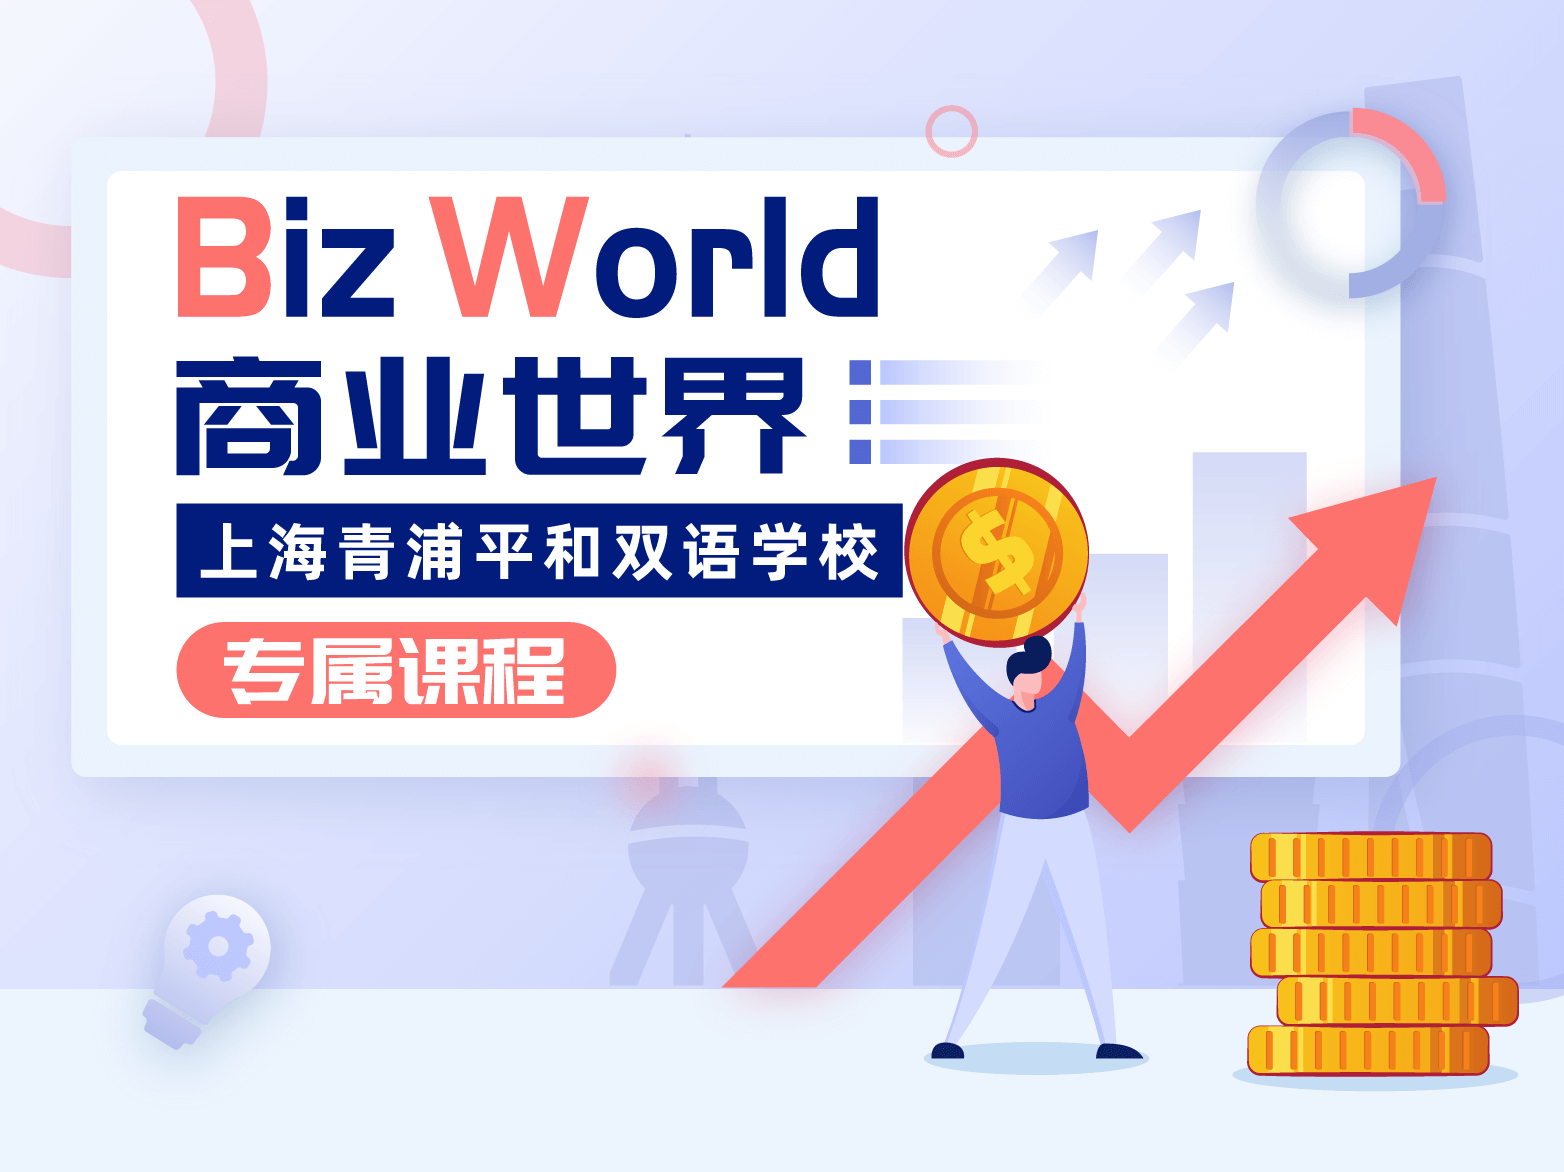 BizWorld商业世界-上海青浦平和双语<span class="label-warning">学校</span>专属课程